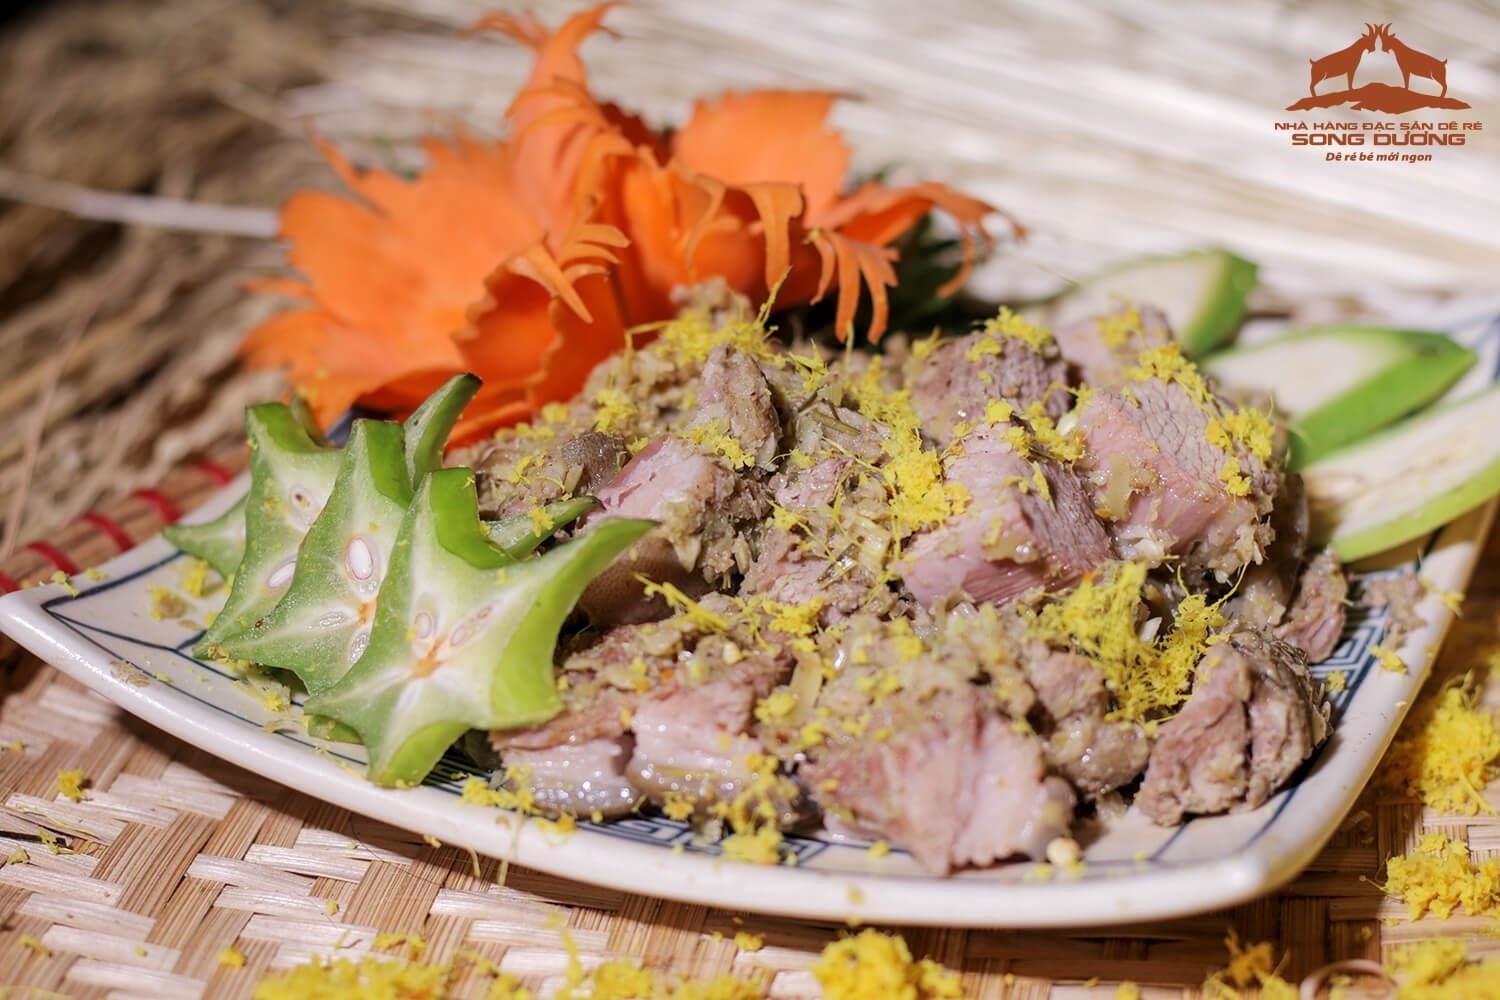 Dê ré chuẩn vị Tây Bắc là một món ăn truyền thống đặc sản của vùng Tây Bắc Việt Nam, nổi tiếng với hương vị độc đáo và phong cách chế biến truyền thống.